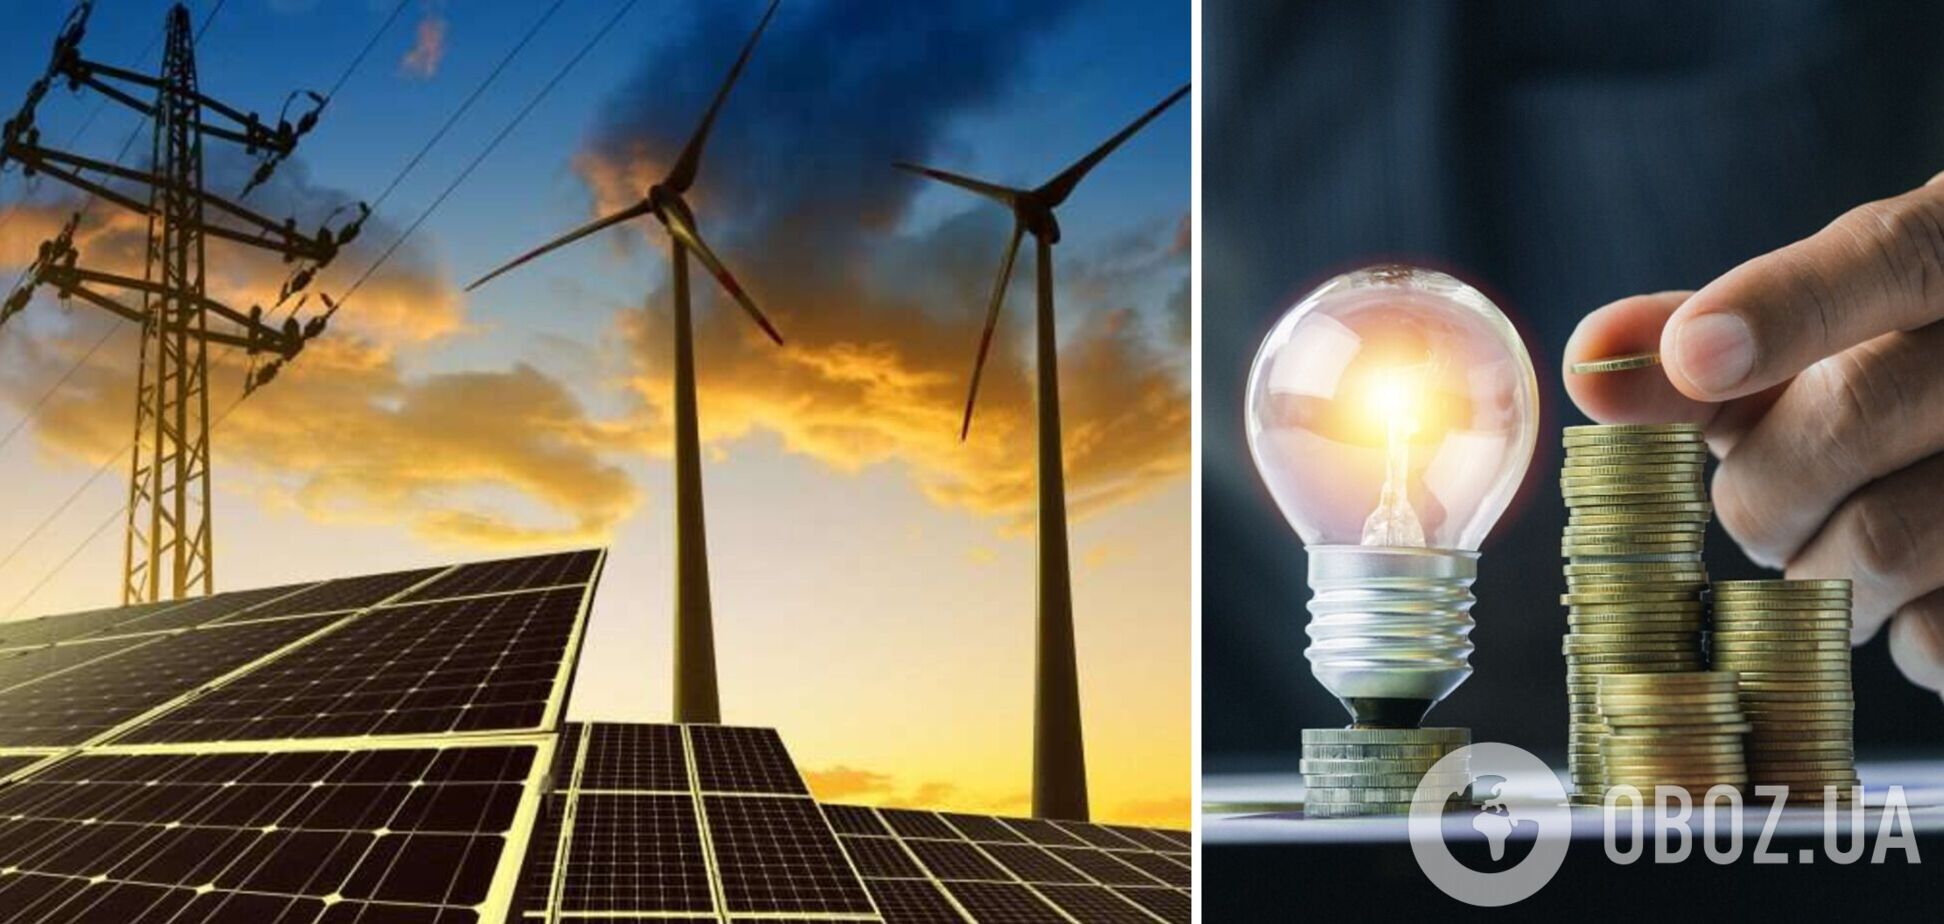 Энергосообщество частично поддержало законопроект по развитию 'зеленой' энергетики